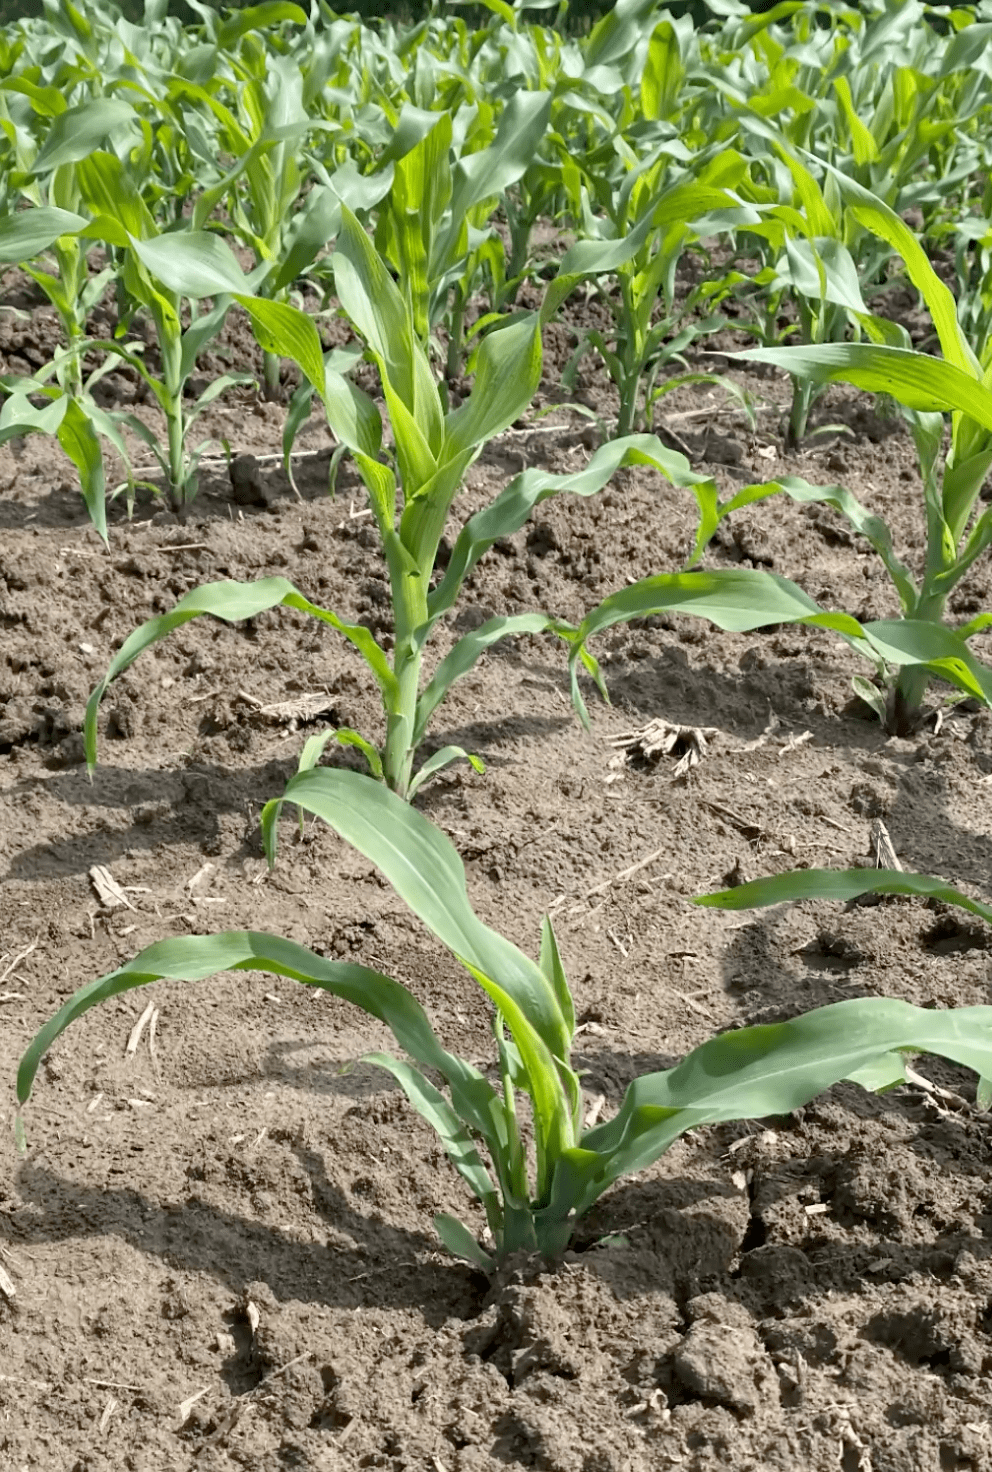 巴斯夫种子处理杀线剂即将上世,对玉米线虫矮化病防效高达90%以上!